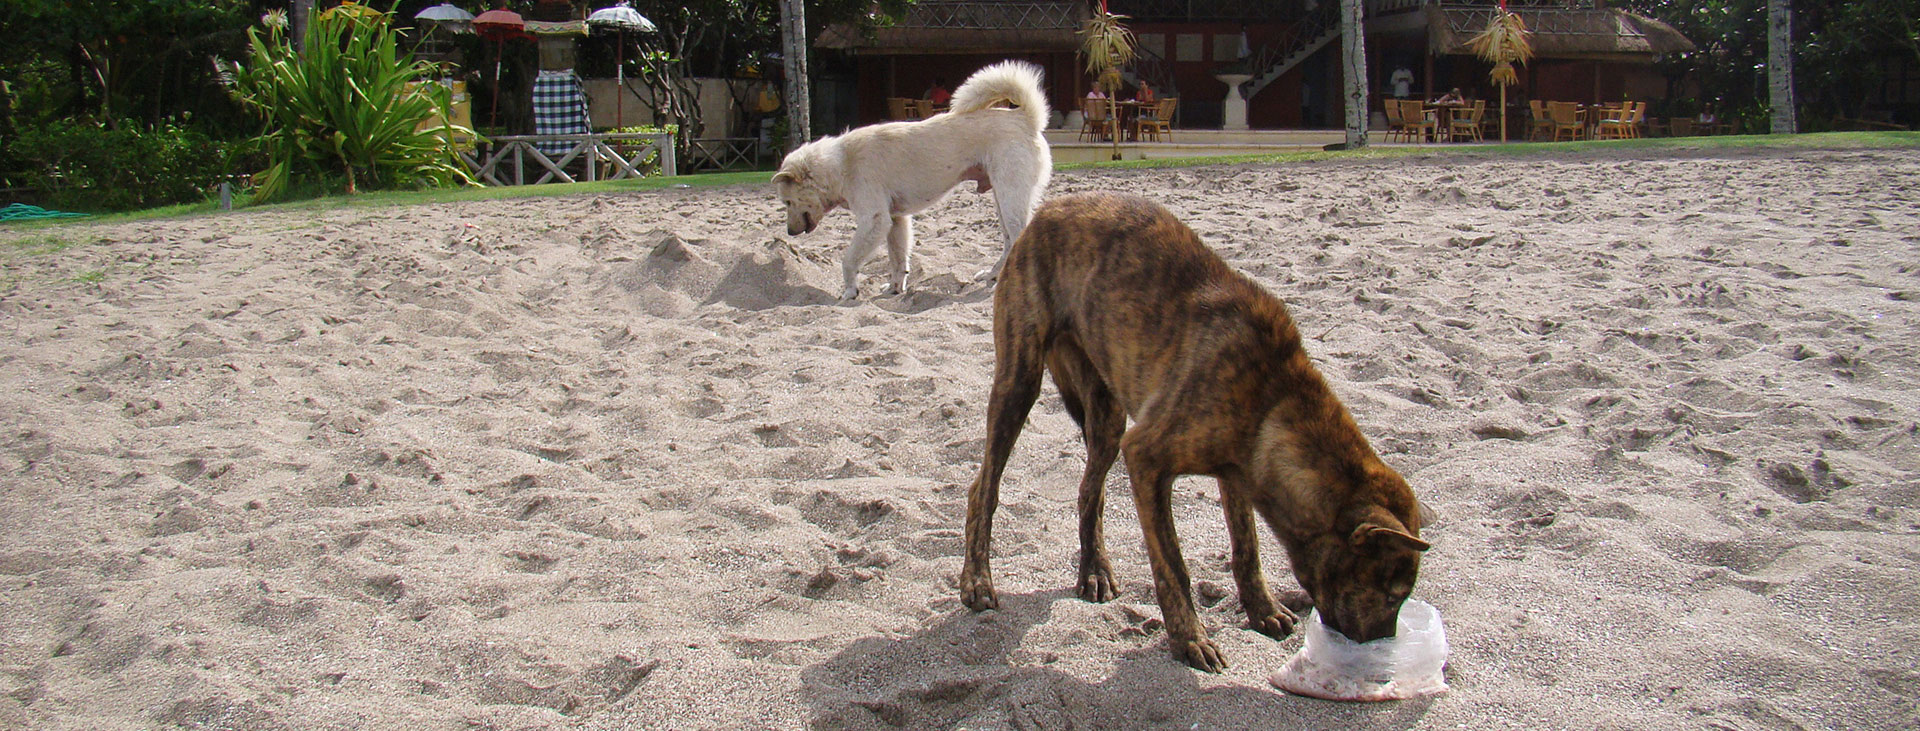 Strassenhunde adoptieren - das solltest du über ihr Verhalten wissen